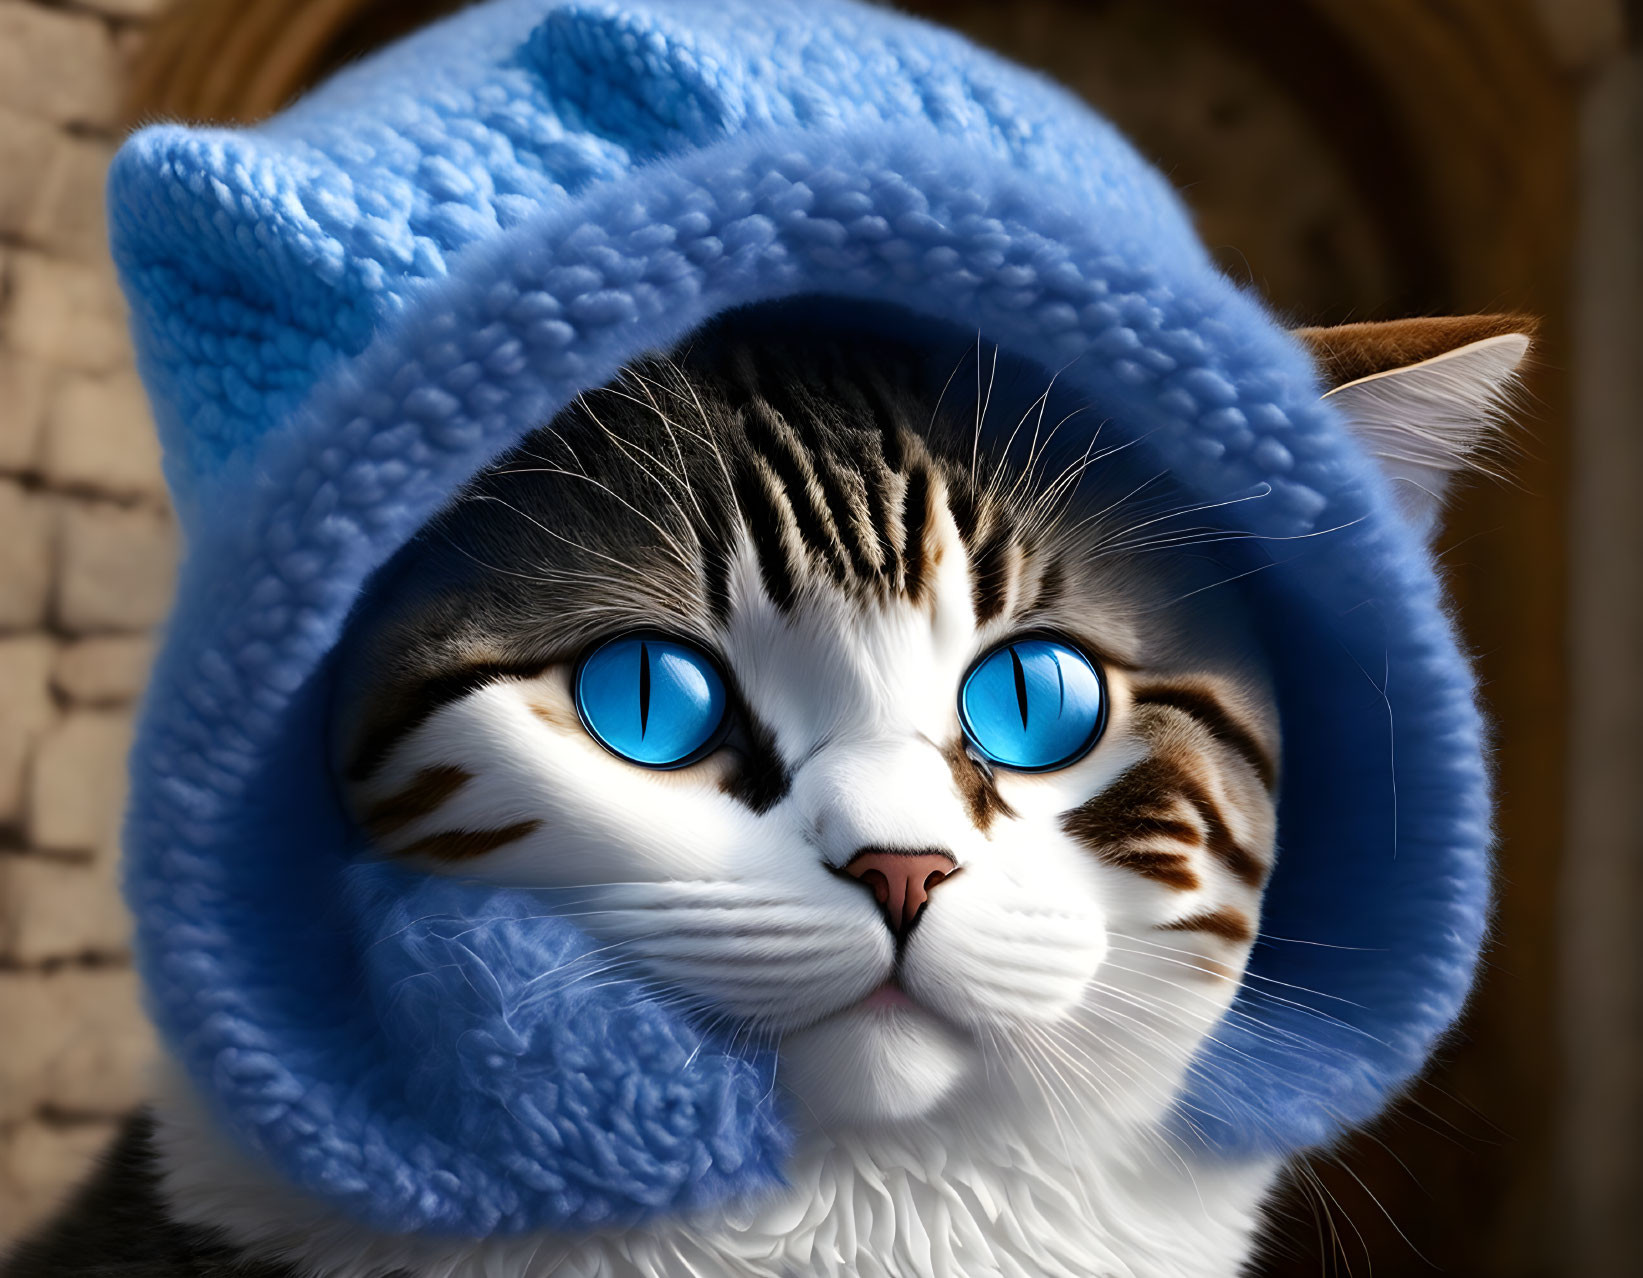 a cute cat trapped in a castle, blue tones, blue w